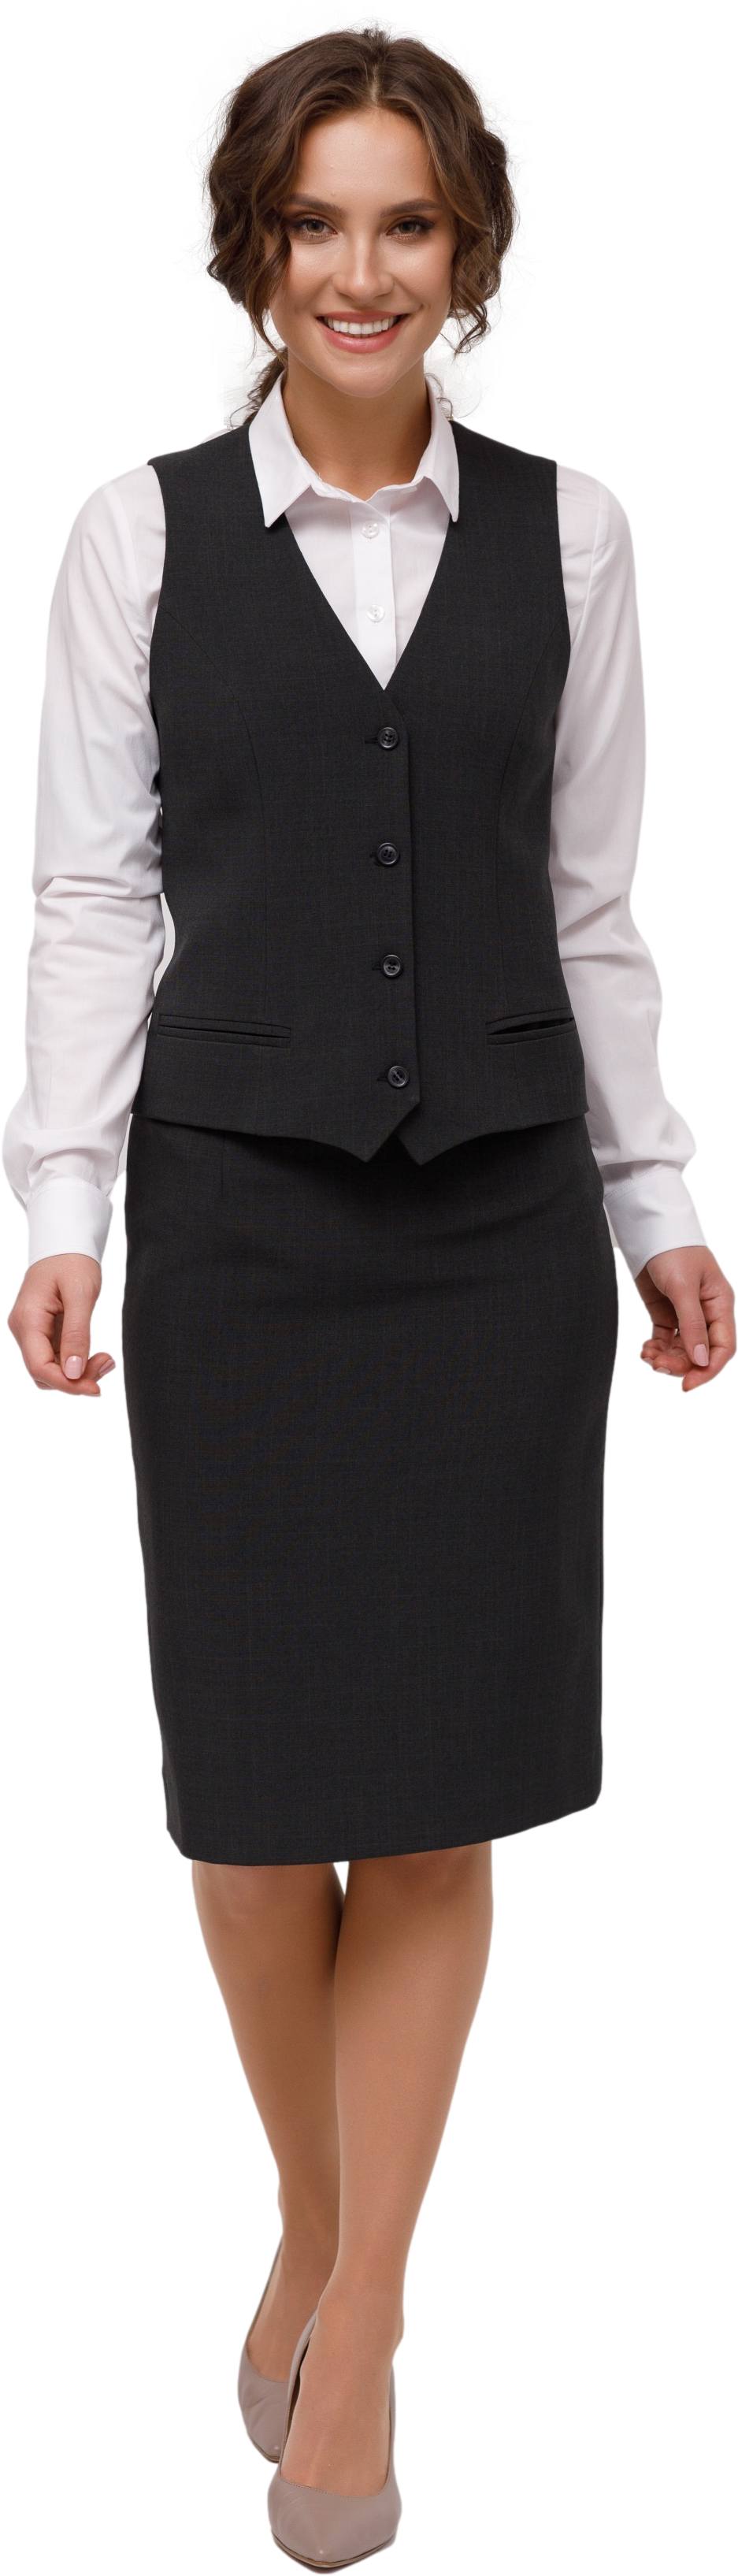 Комплект для администратора DALLAS - жилет / юбка, женский. 